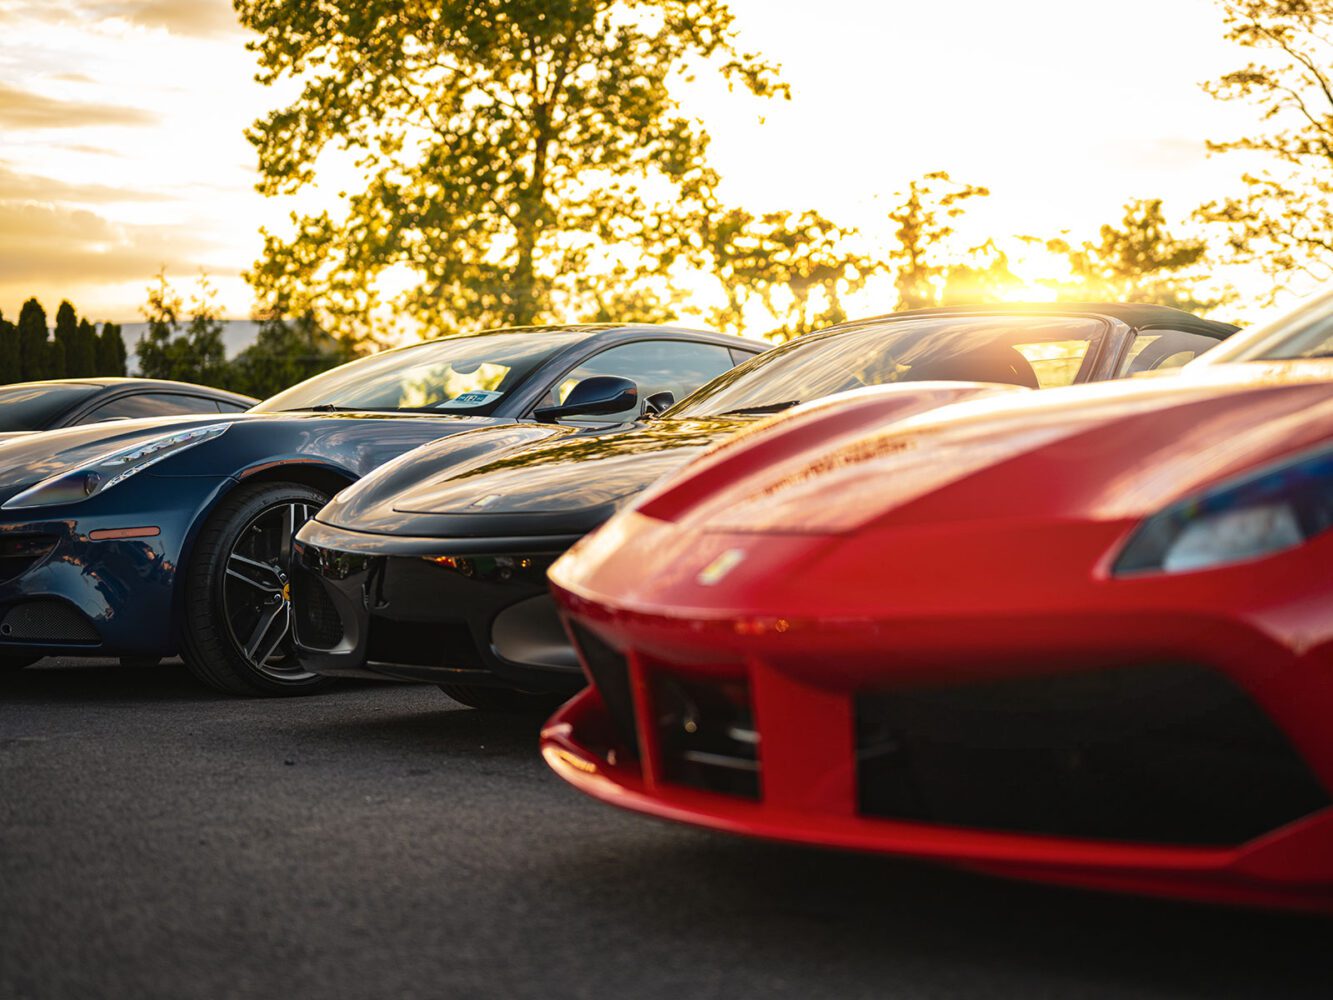 Ferraris parked